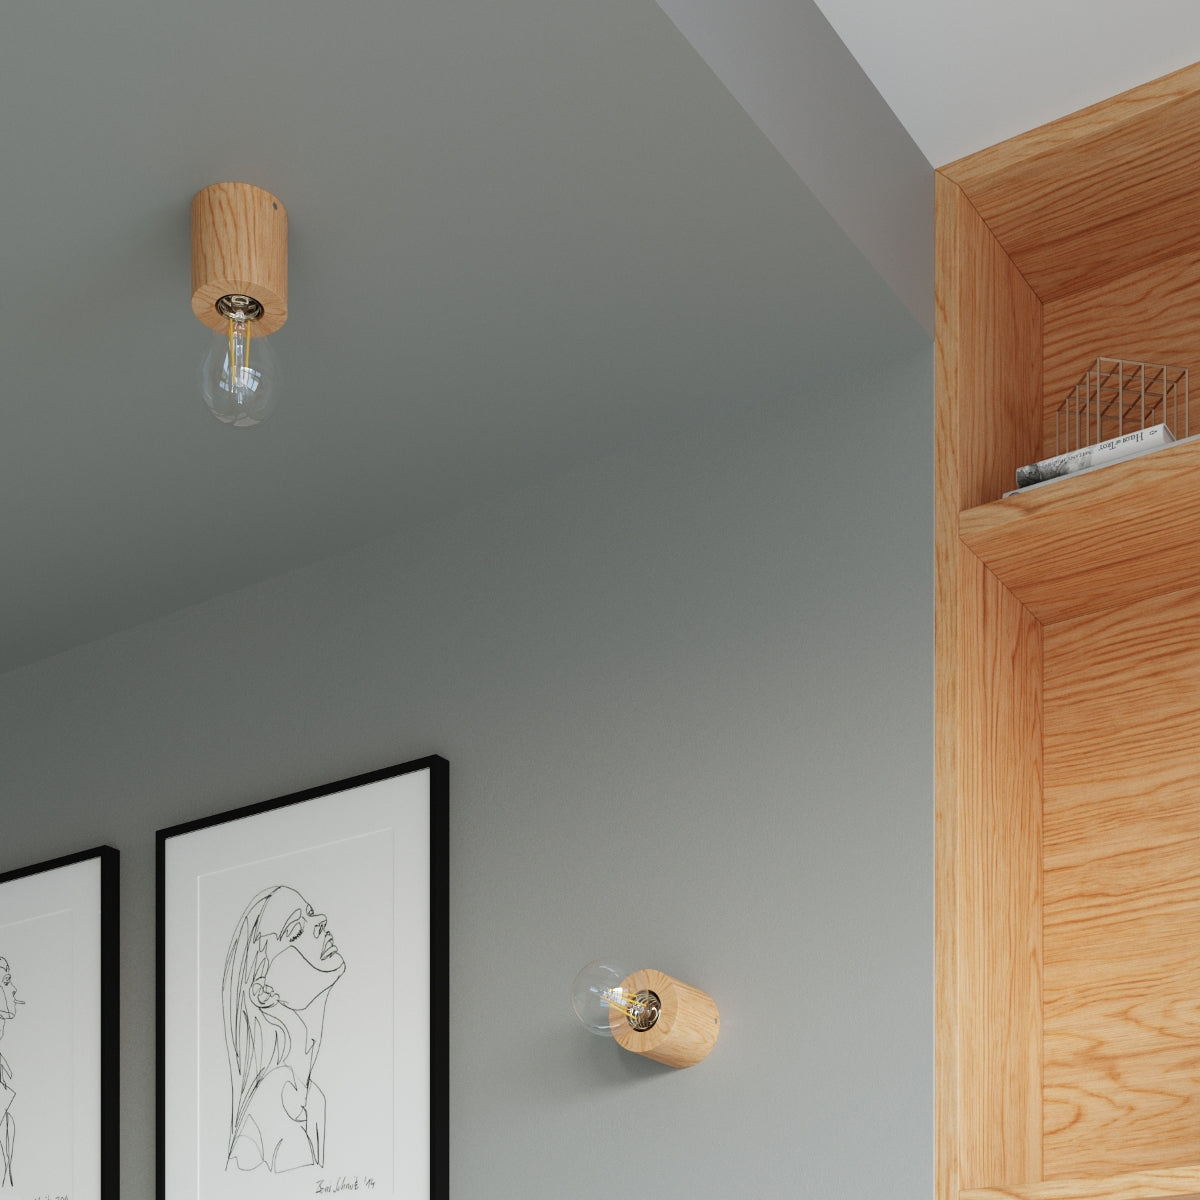 plafondlamp-salgado-natuurlijk-hout